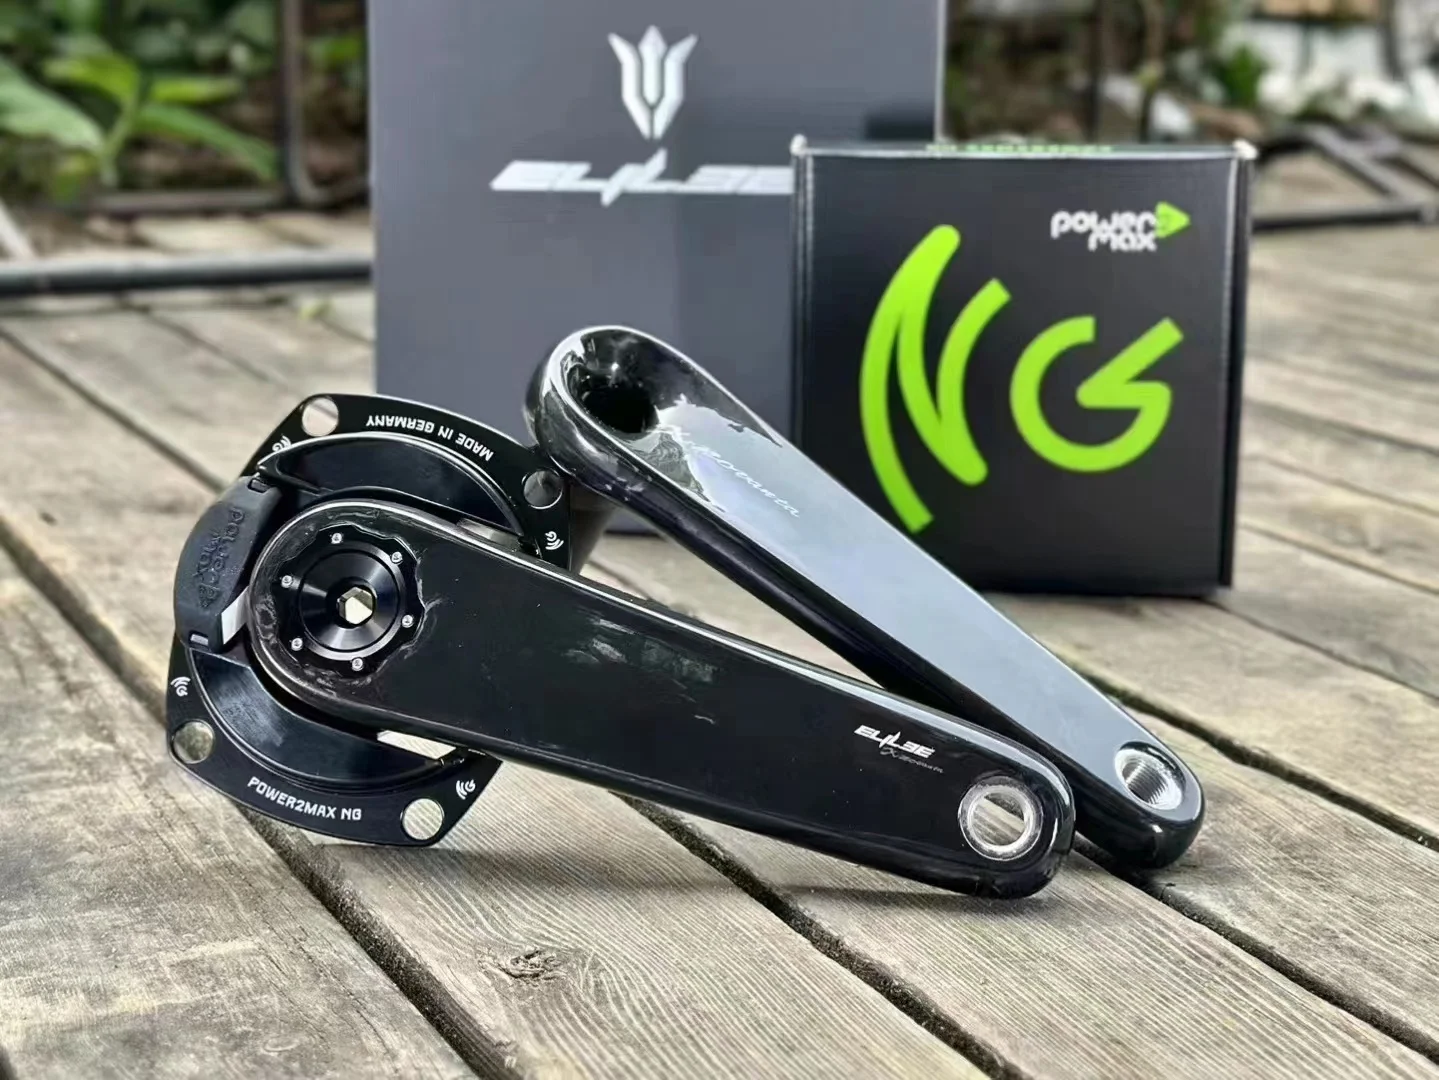 ELILEE X-Novanta Integrated Carbon Spindle Crank;Full Carbon Crank;Ultra Light Crank;Road Bicycle Crank Arm